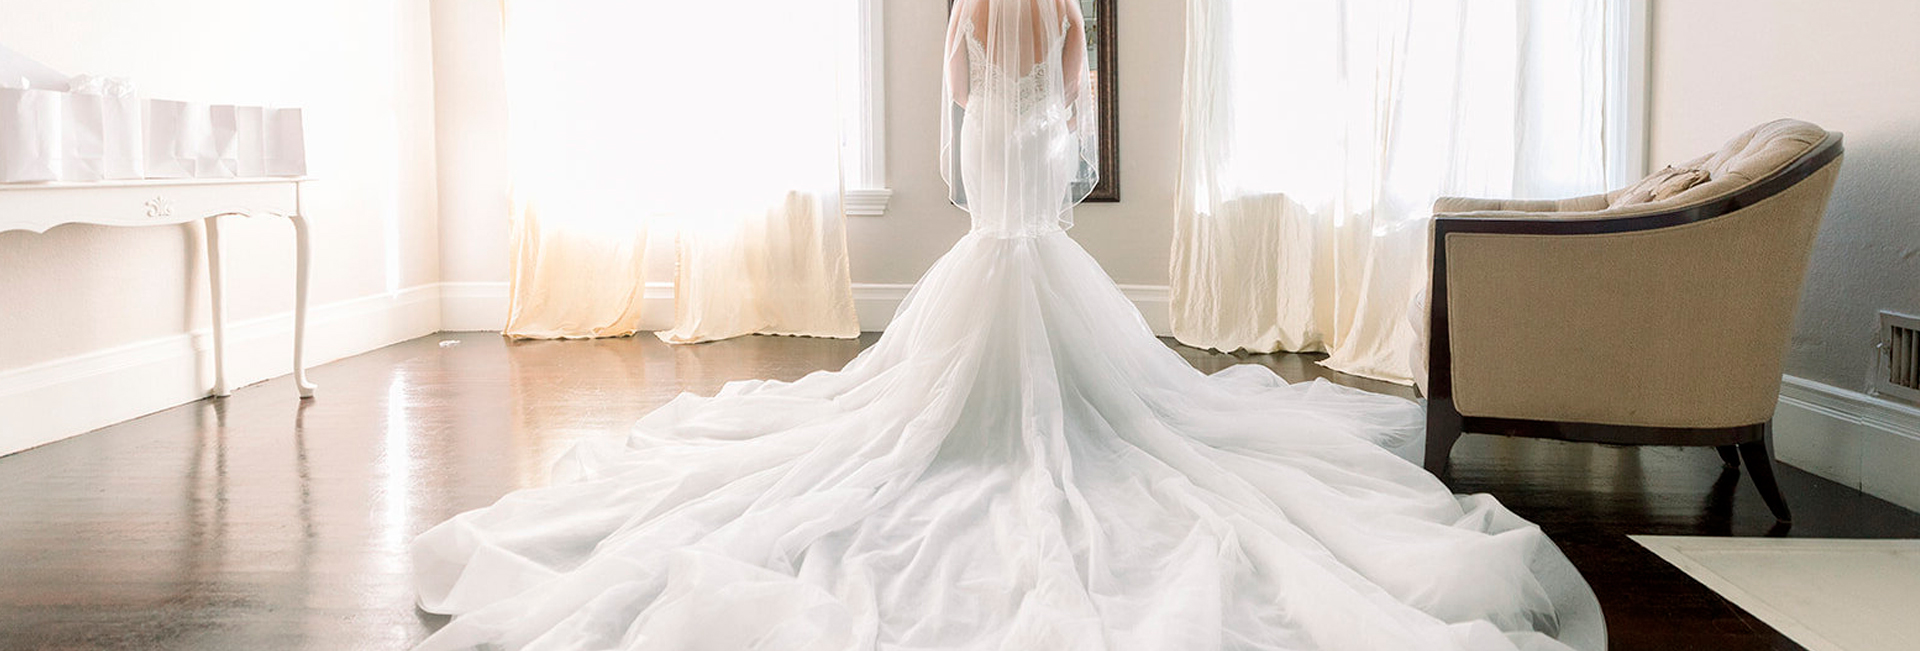 Elige un vestido de novia según tu estilo